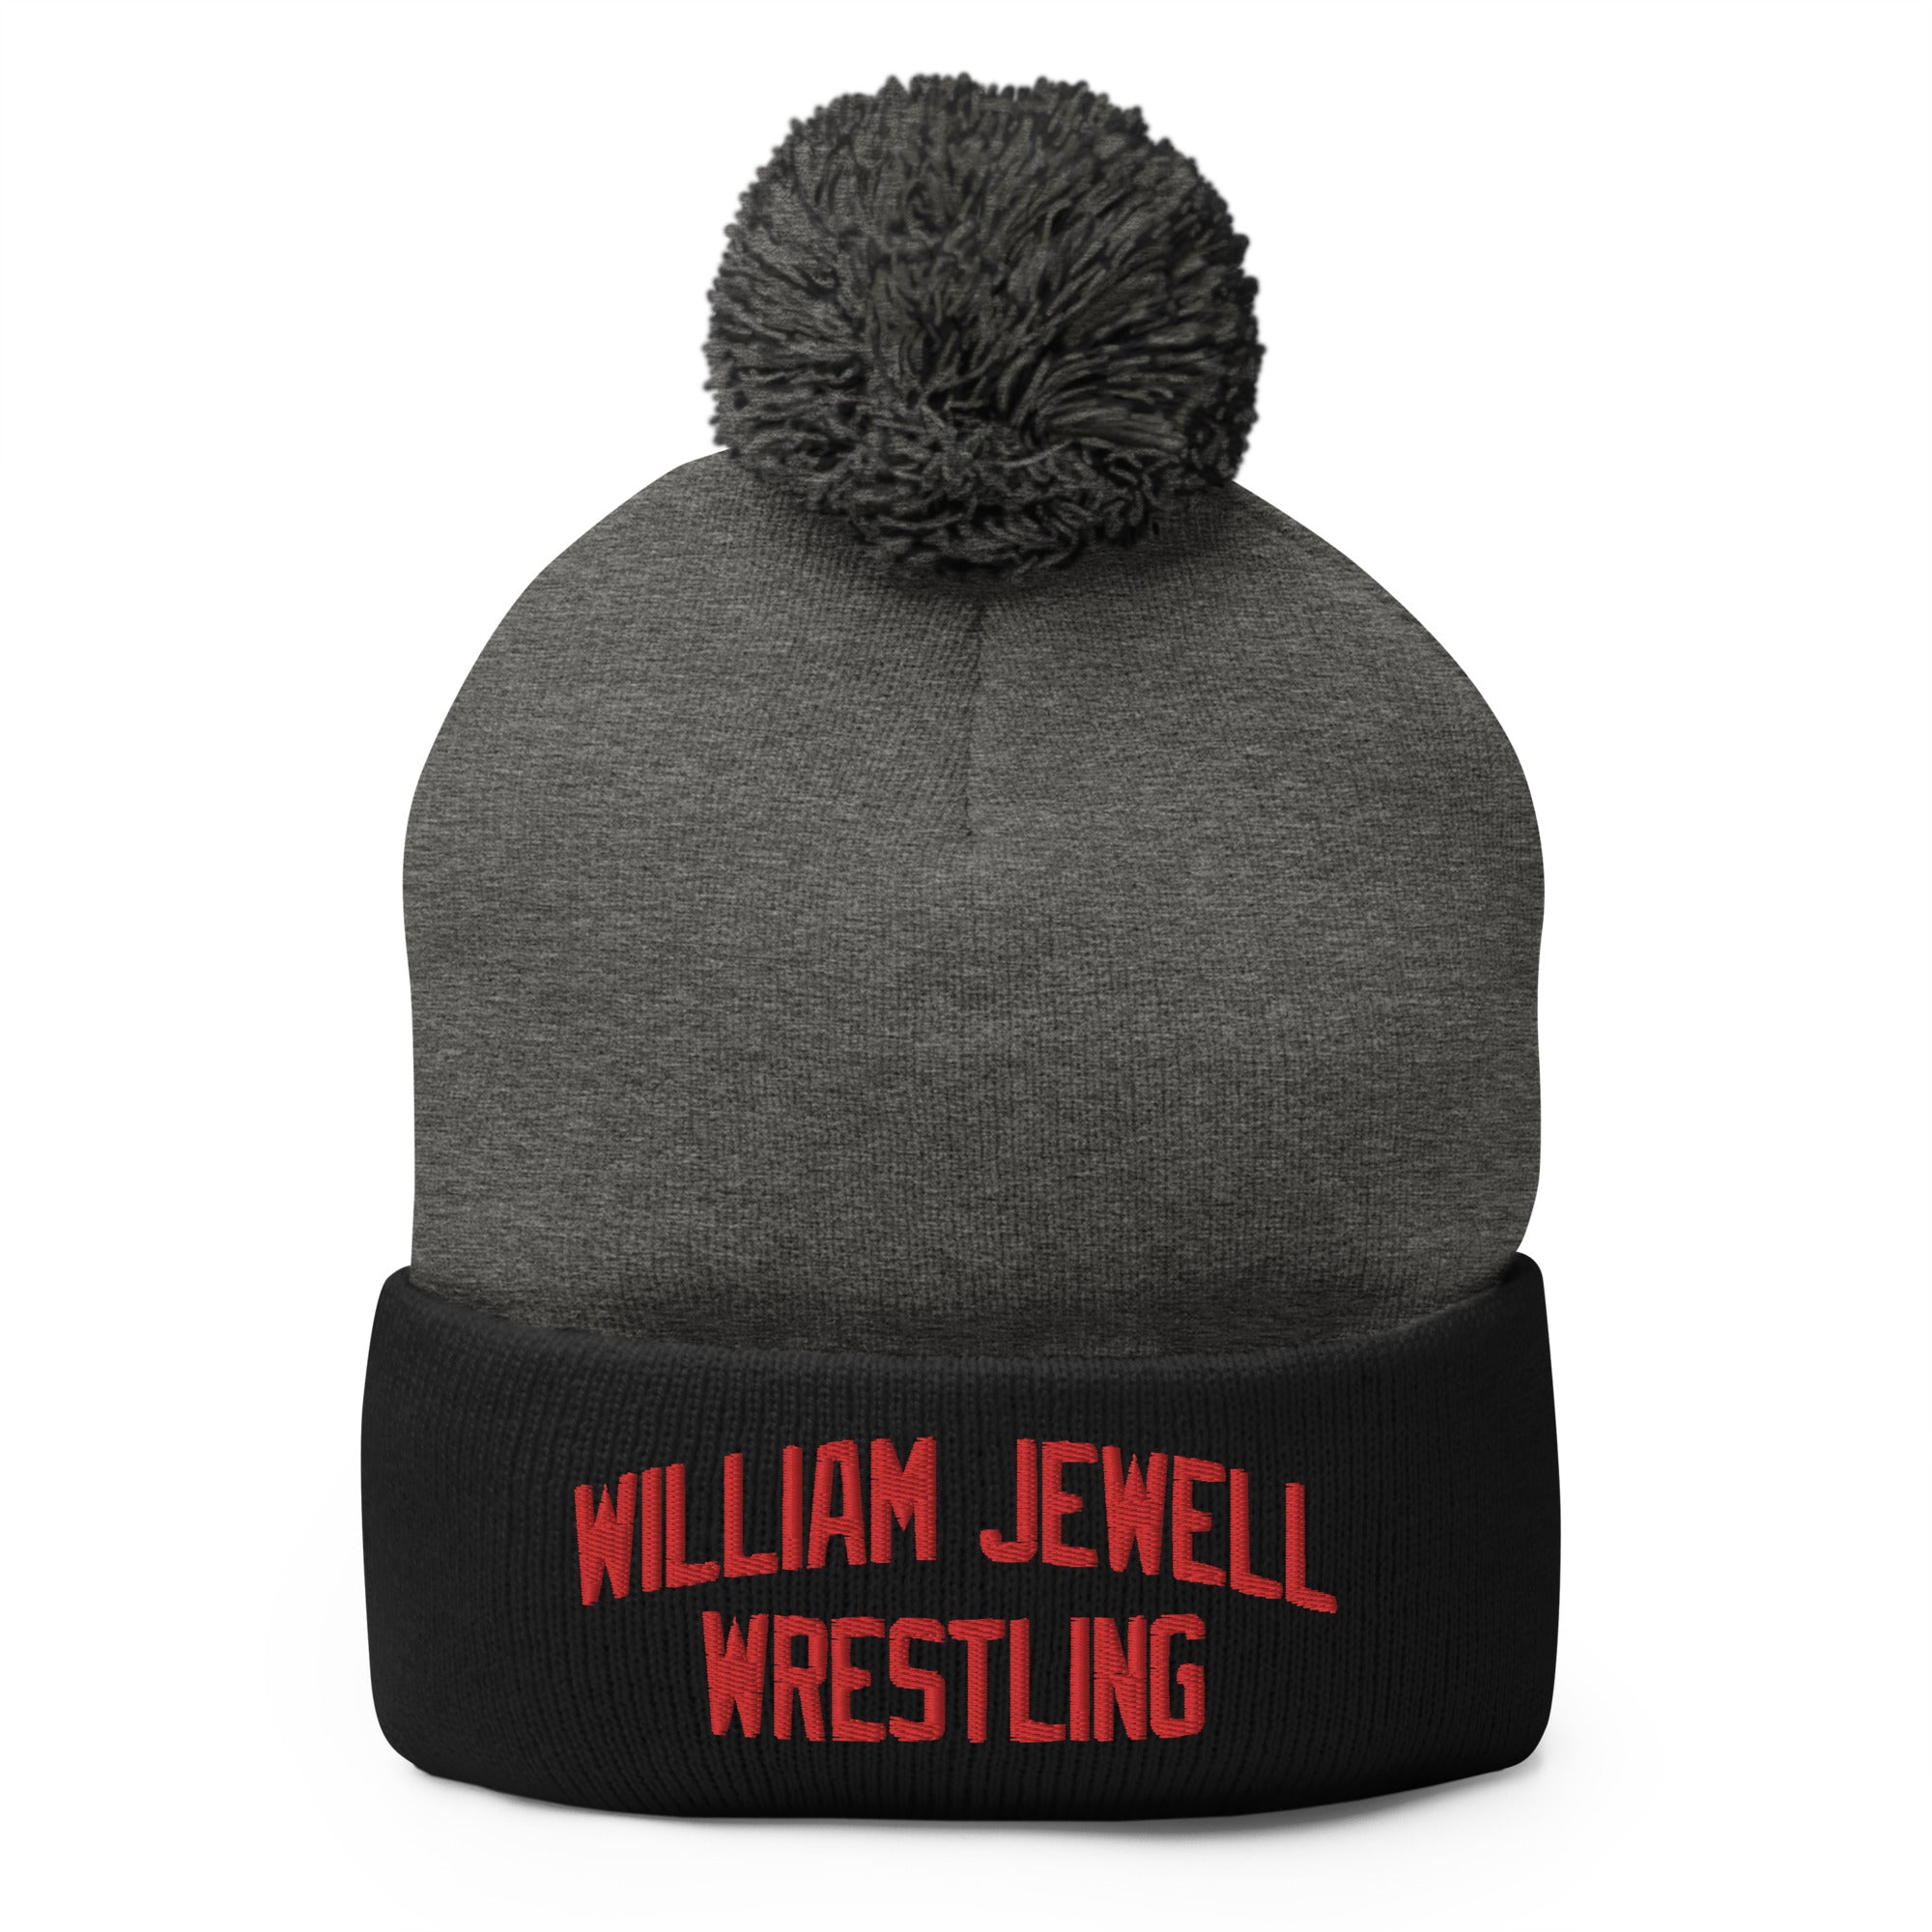 William Jewell Wrestling Pom-Pom Knit Cap